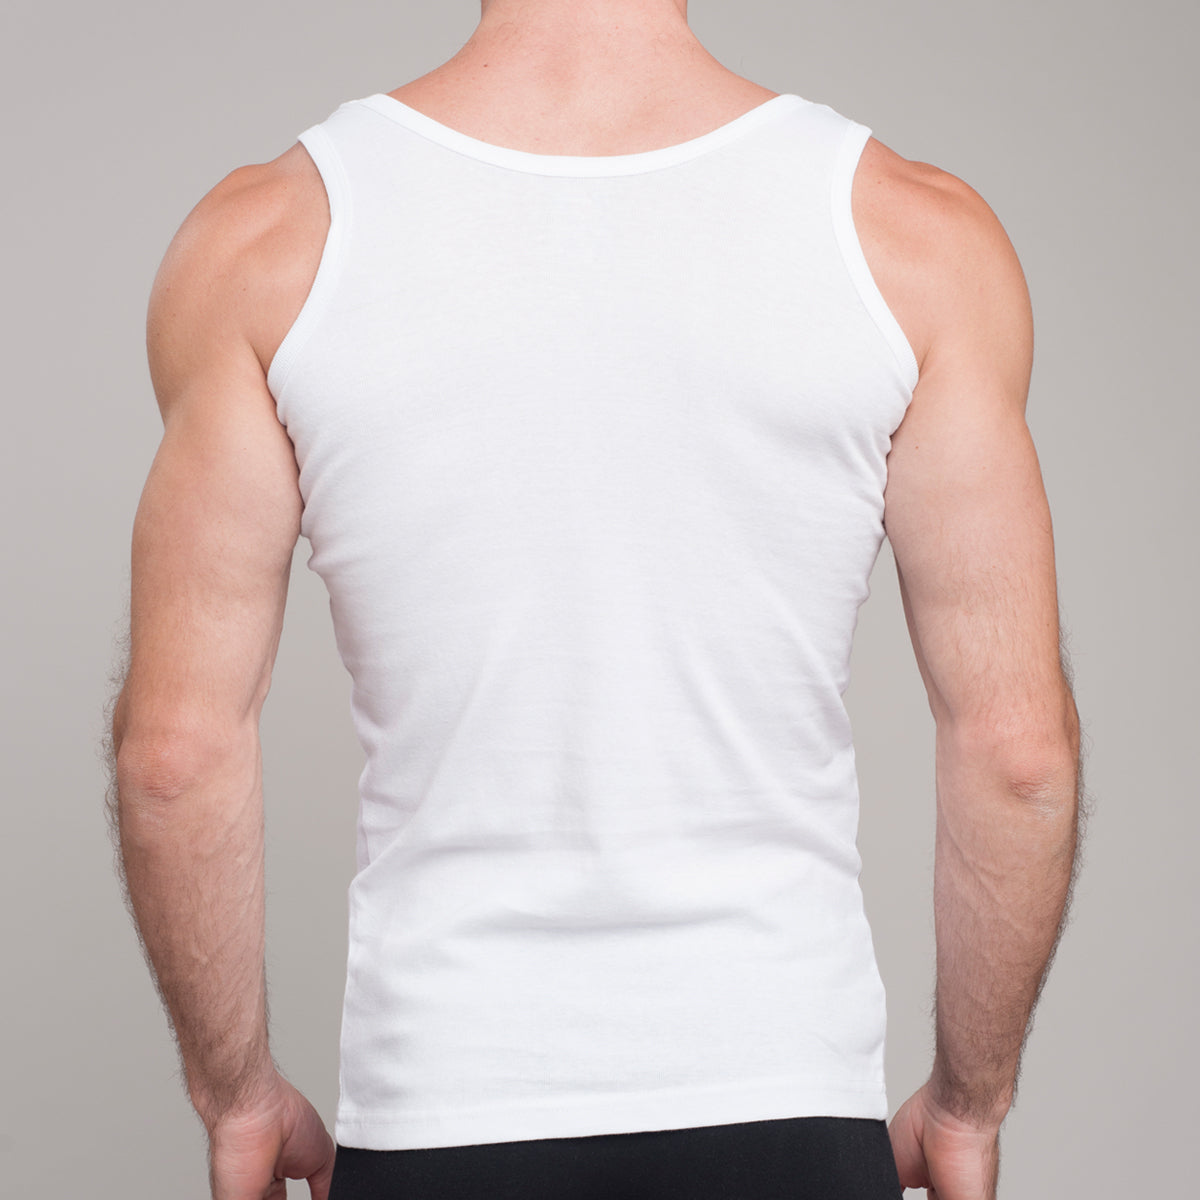 Camisetas Sin Mangas para Hombre - Compra Online Camisetas Sin